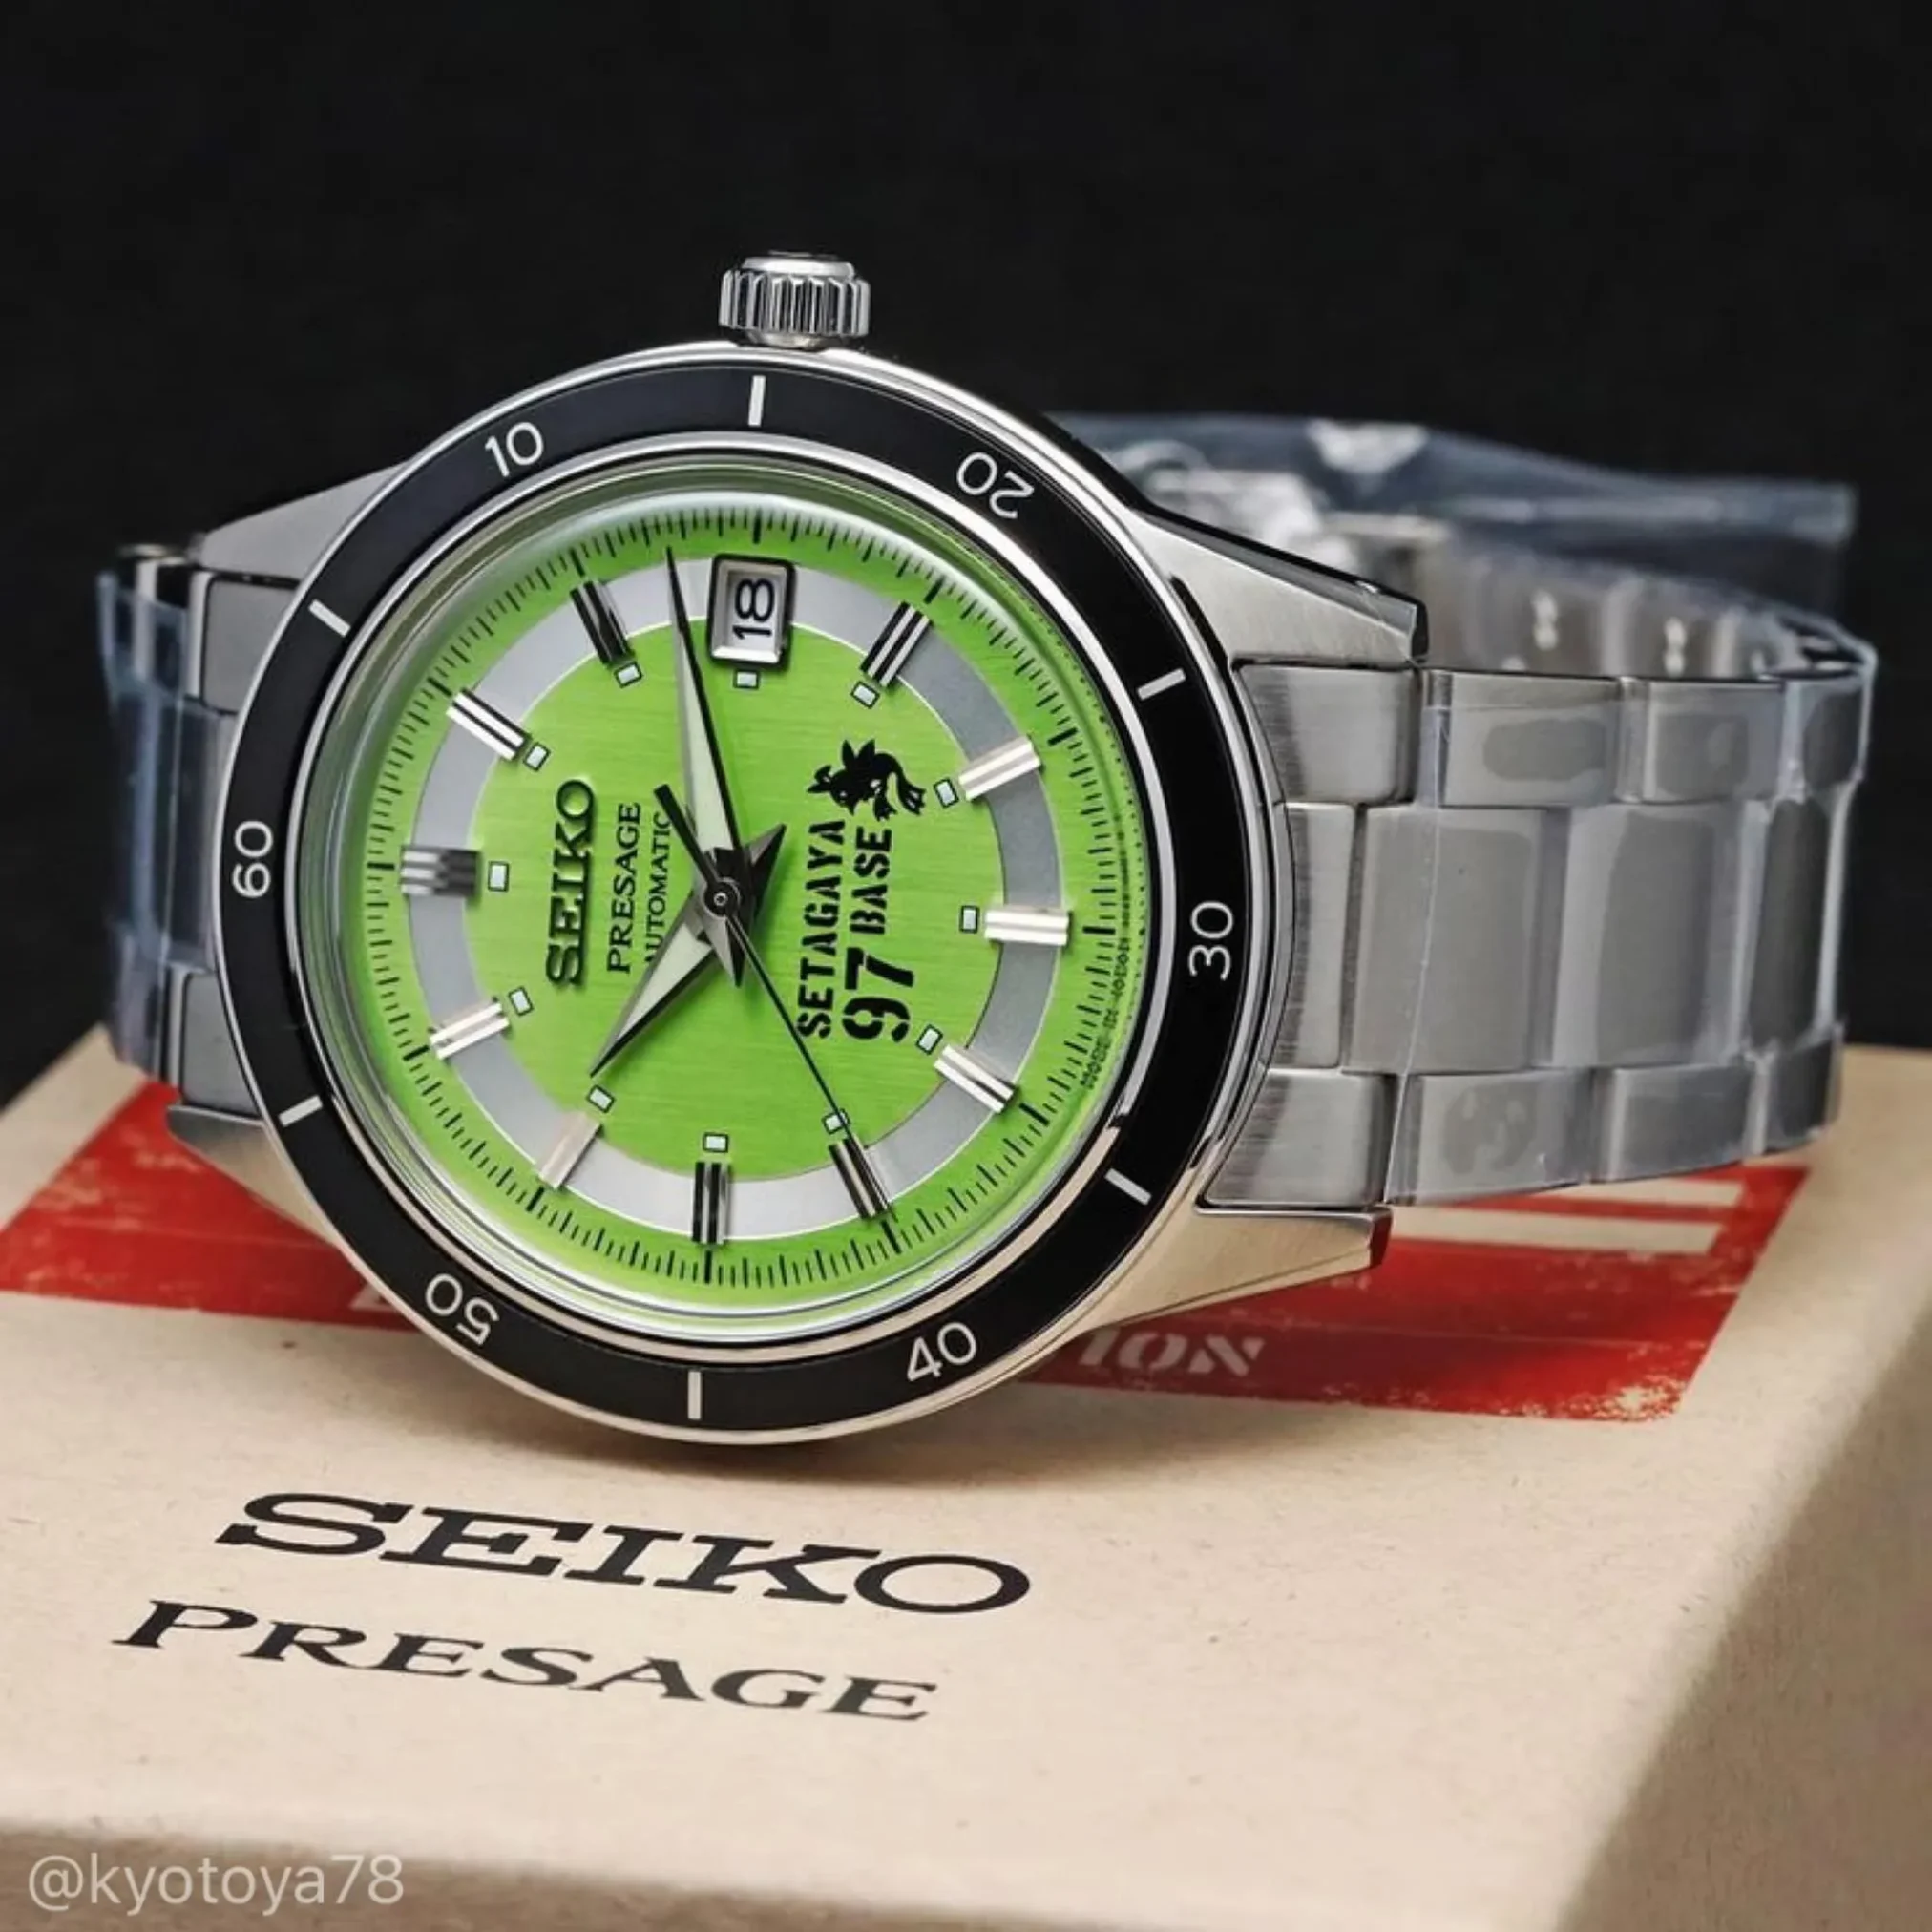 Đồng hồ Seiko Presage Style60's George Tokoro's Setagaya Base 97 Limited Edition SARY225 mặt số màu xanh. Dây đeo bằng thép. Thân vỏ bằng thép.